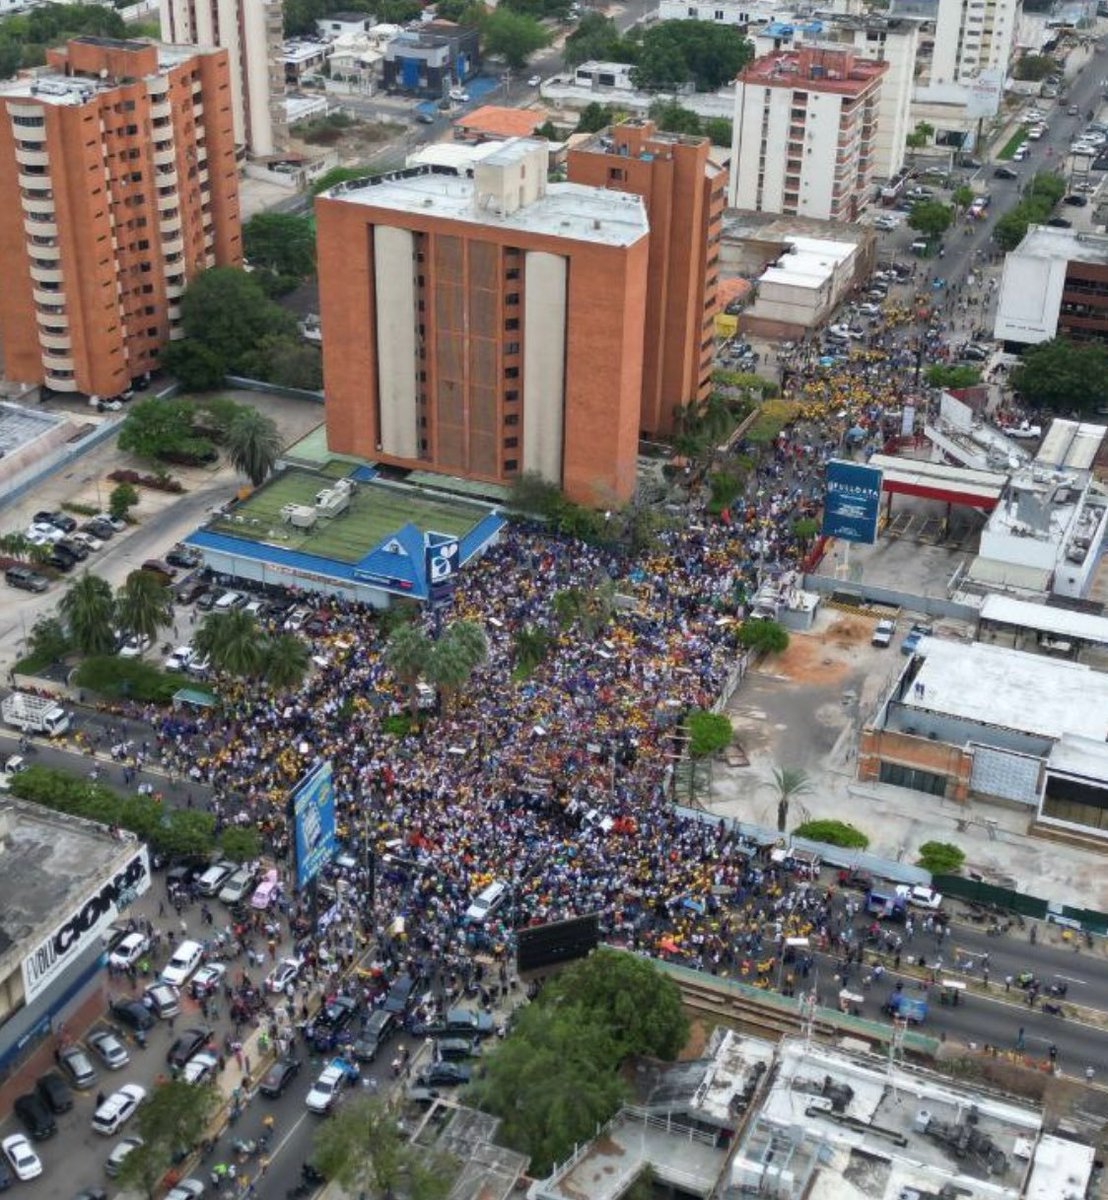 En la segunda región mas poblada de Venezuela (Zulia), María Corina y su 'candidato afiche' no lograron llenar una cuadra...Más gente mueve Rosales, es la realidad.